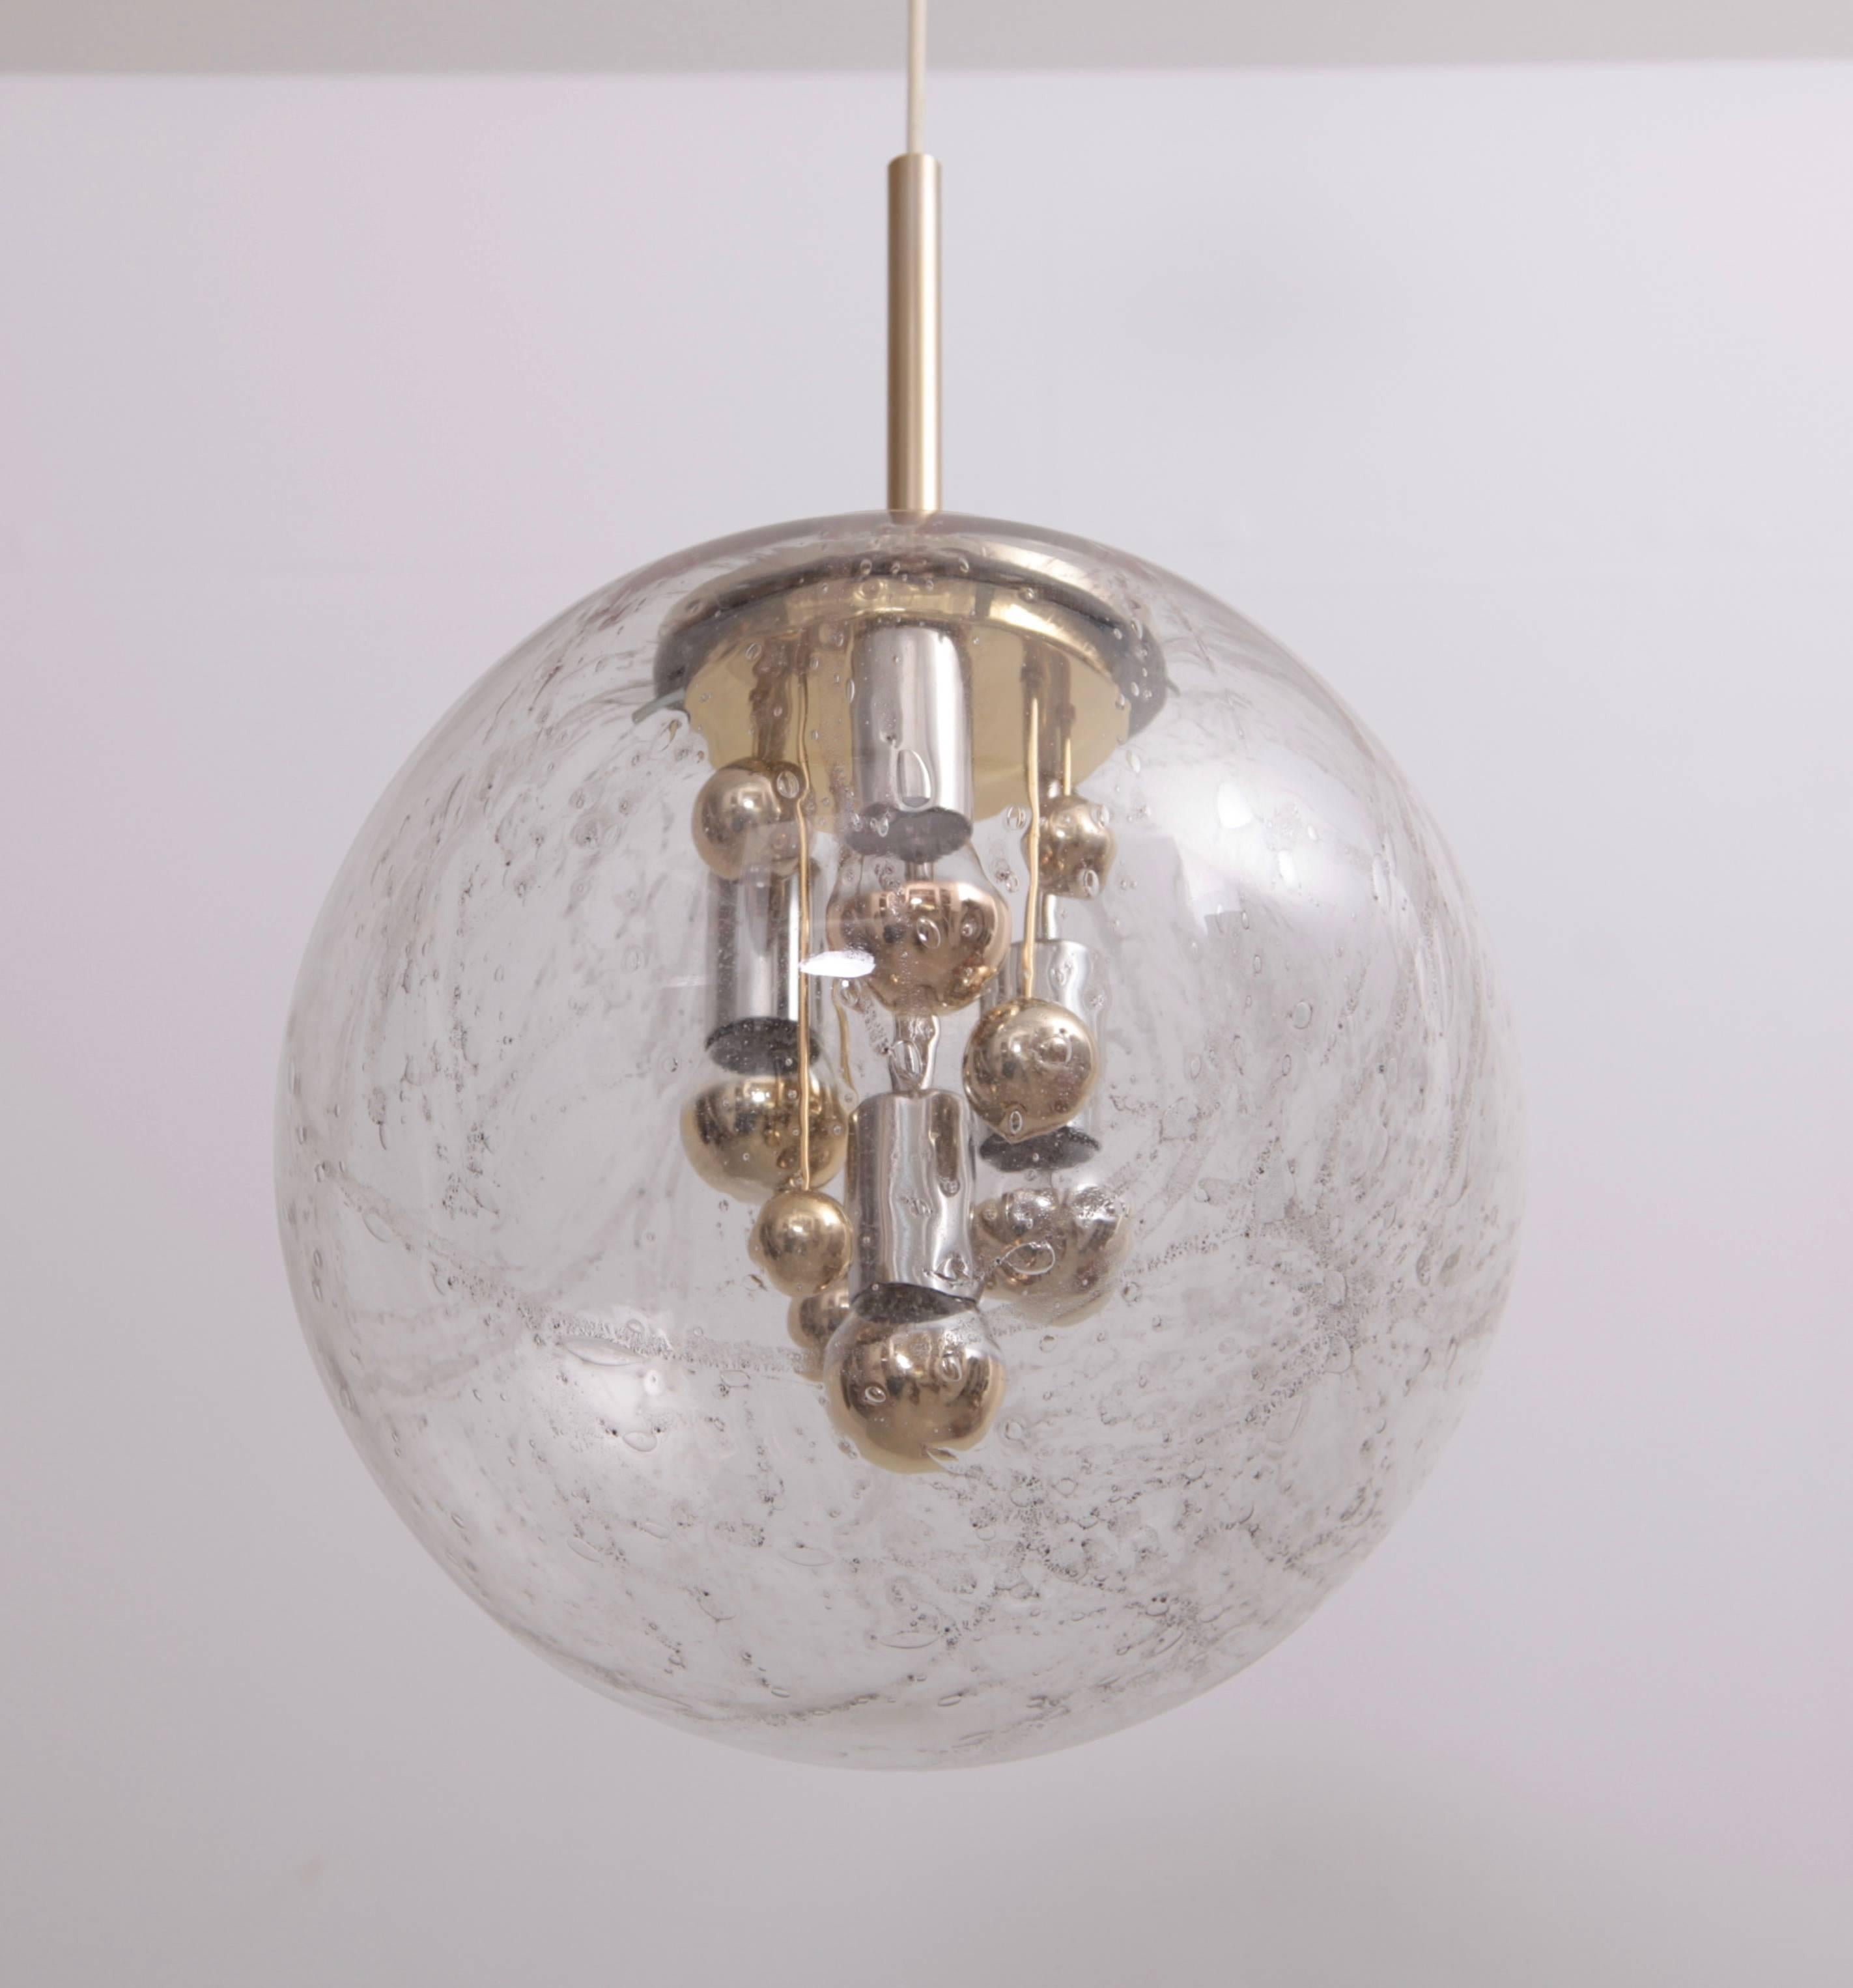 Magnifique lampe pendante en verre bulle énorme avec des détails en laiton à l'intérieur du verre.
L'autocollant est toujours sur le verre. Mesures : 4 x ampoules modèle A / E27.
Pour plus de sécurité, la lampe doit être contrôlée sur place par un